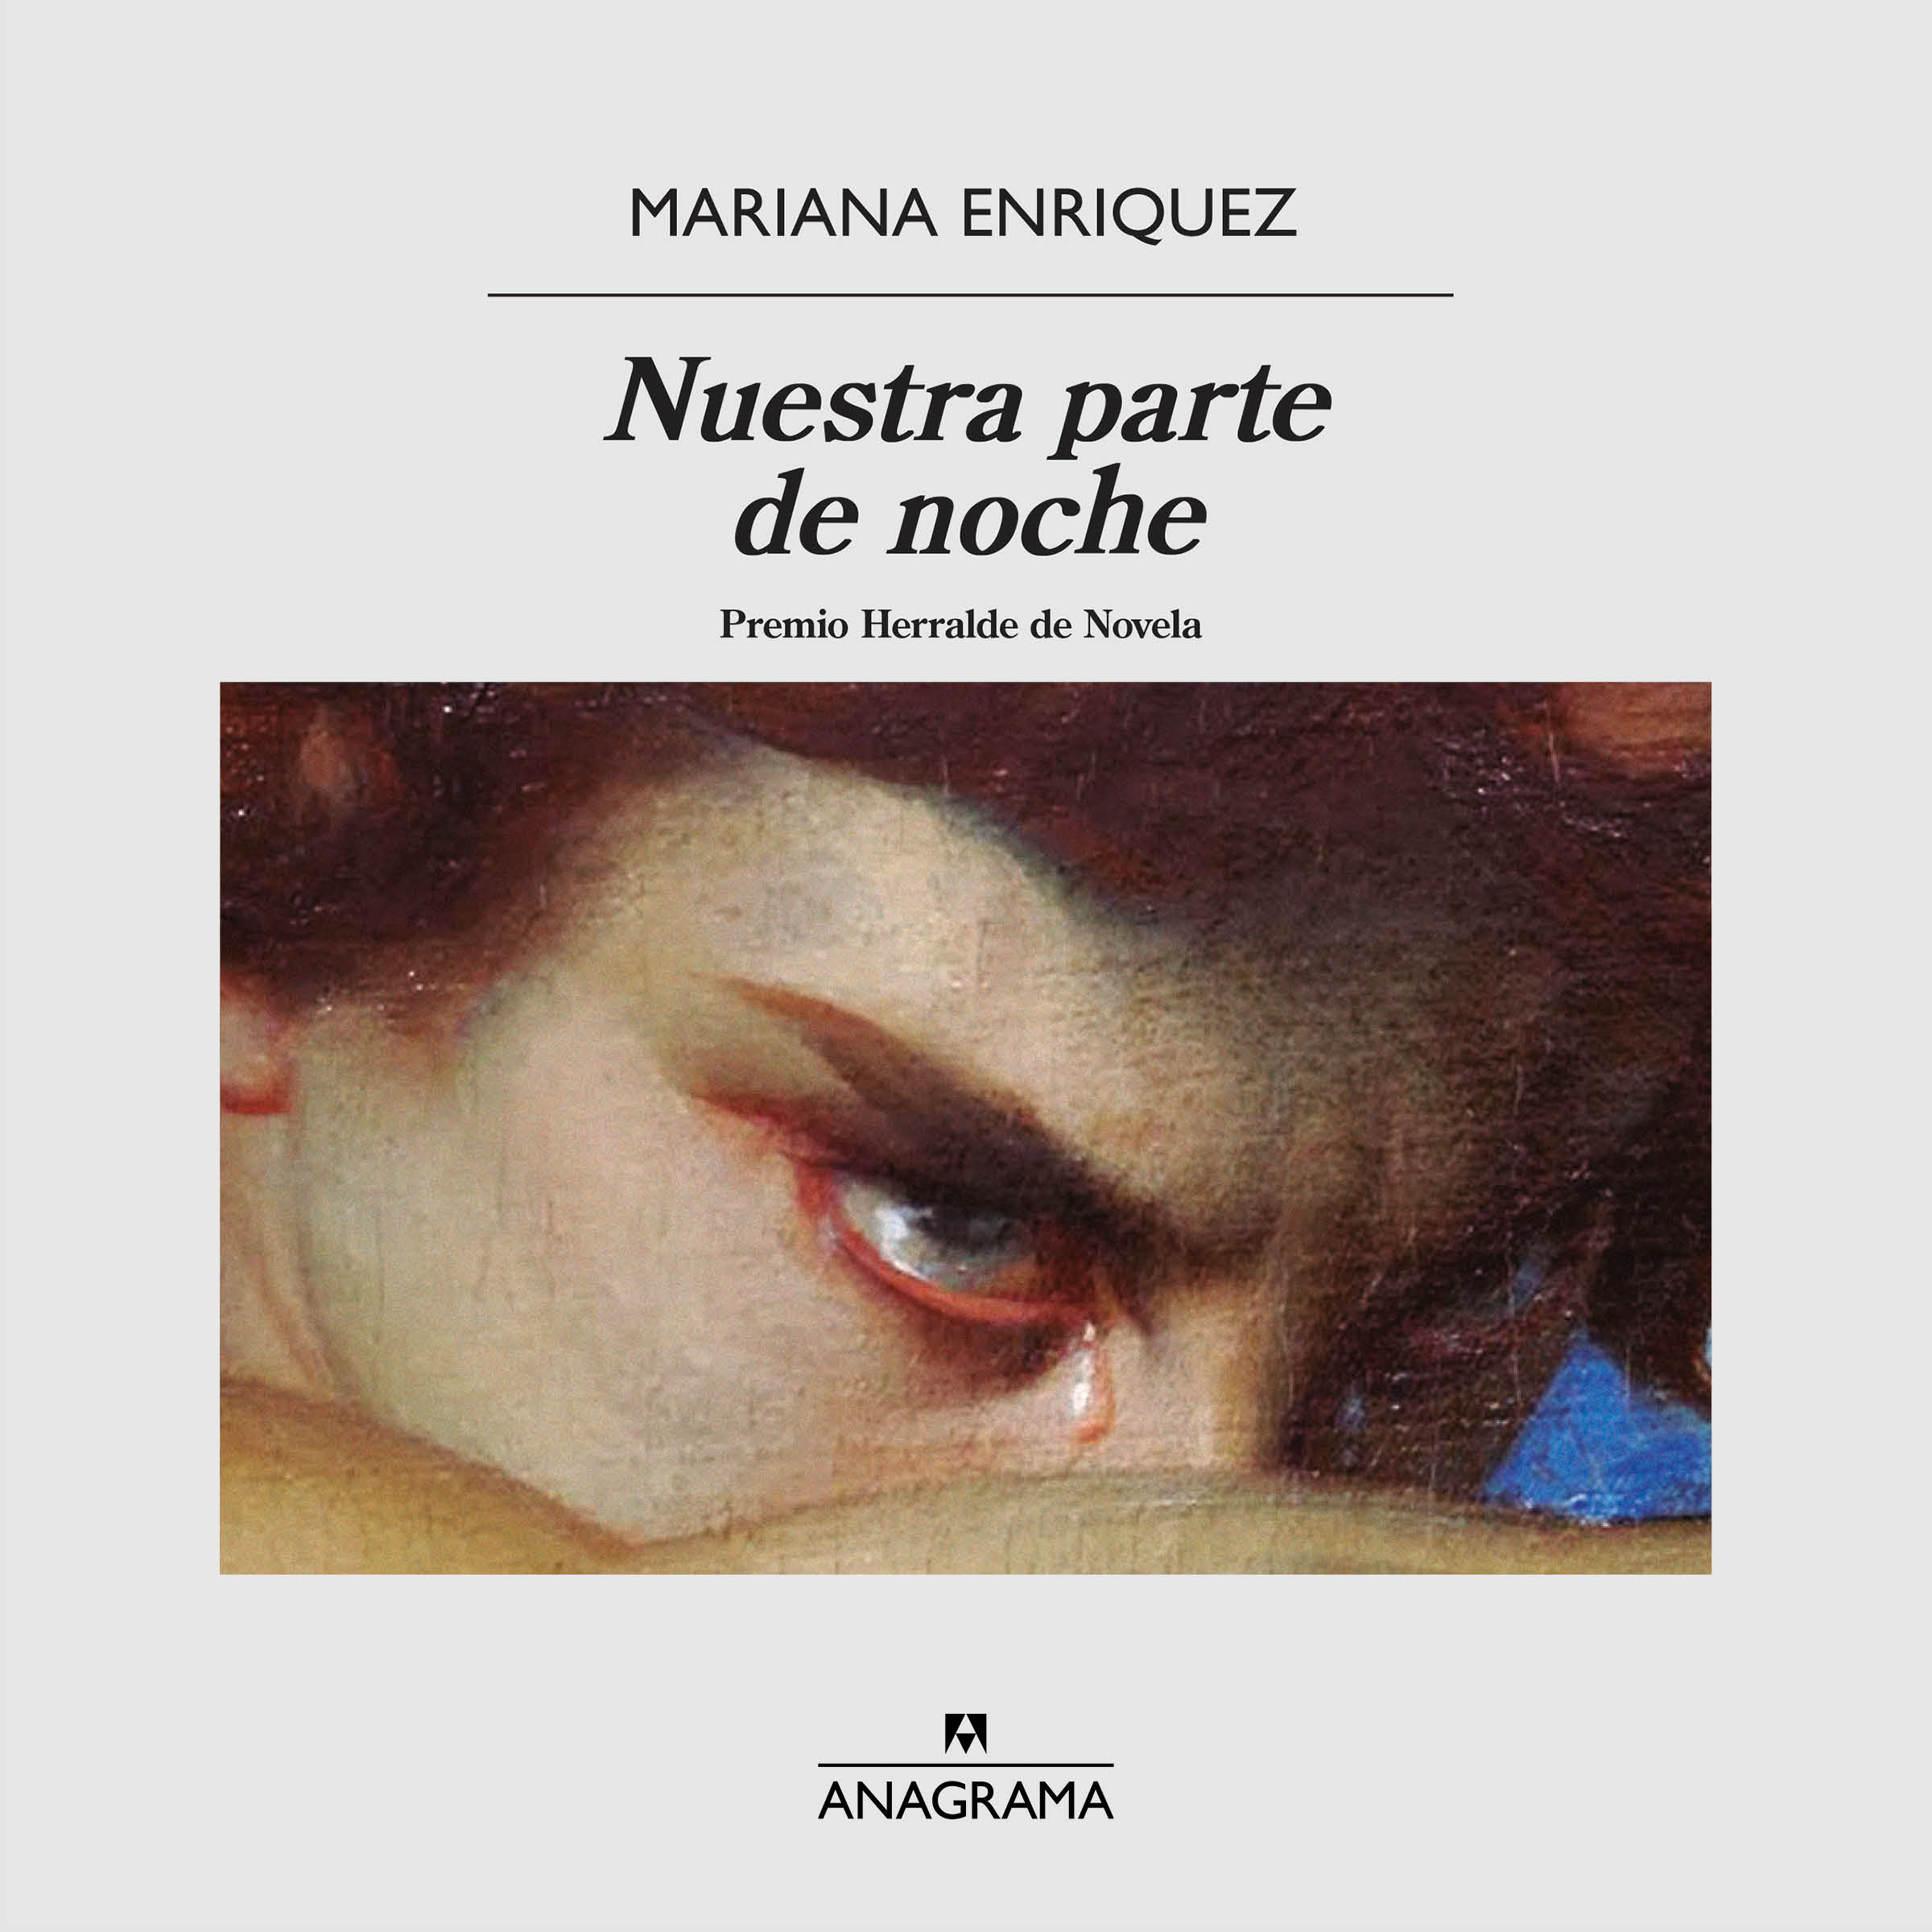 Nuestra parte de noche - Enriquez, Mariana - 978-84-339-9885-9